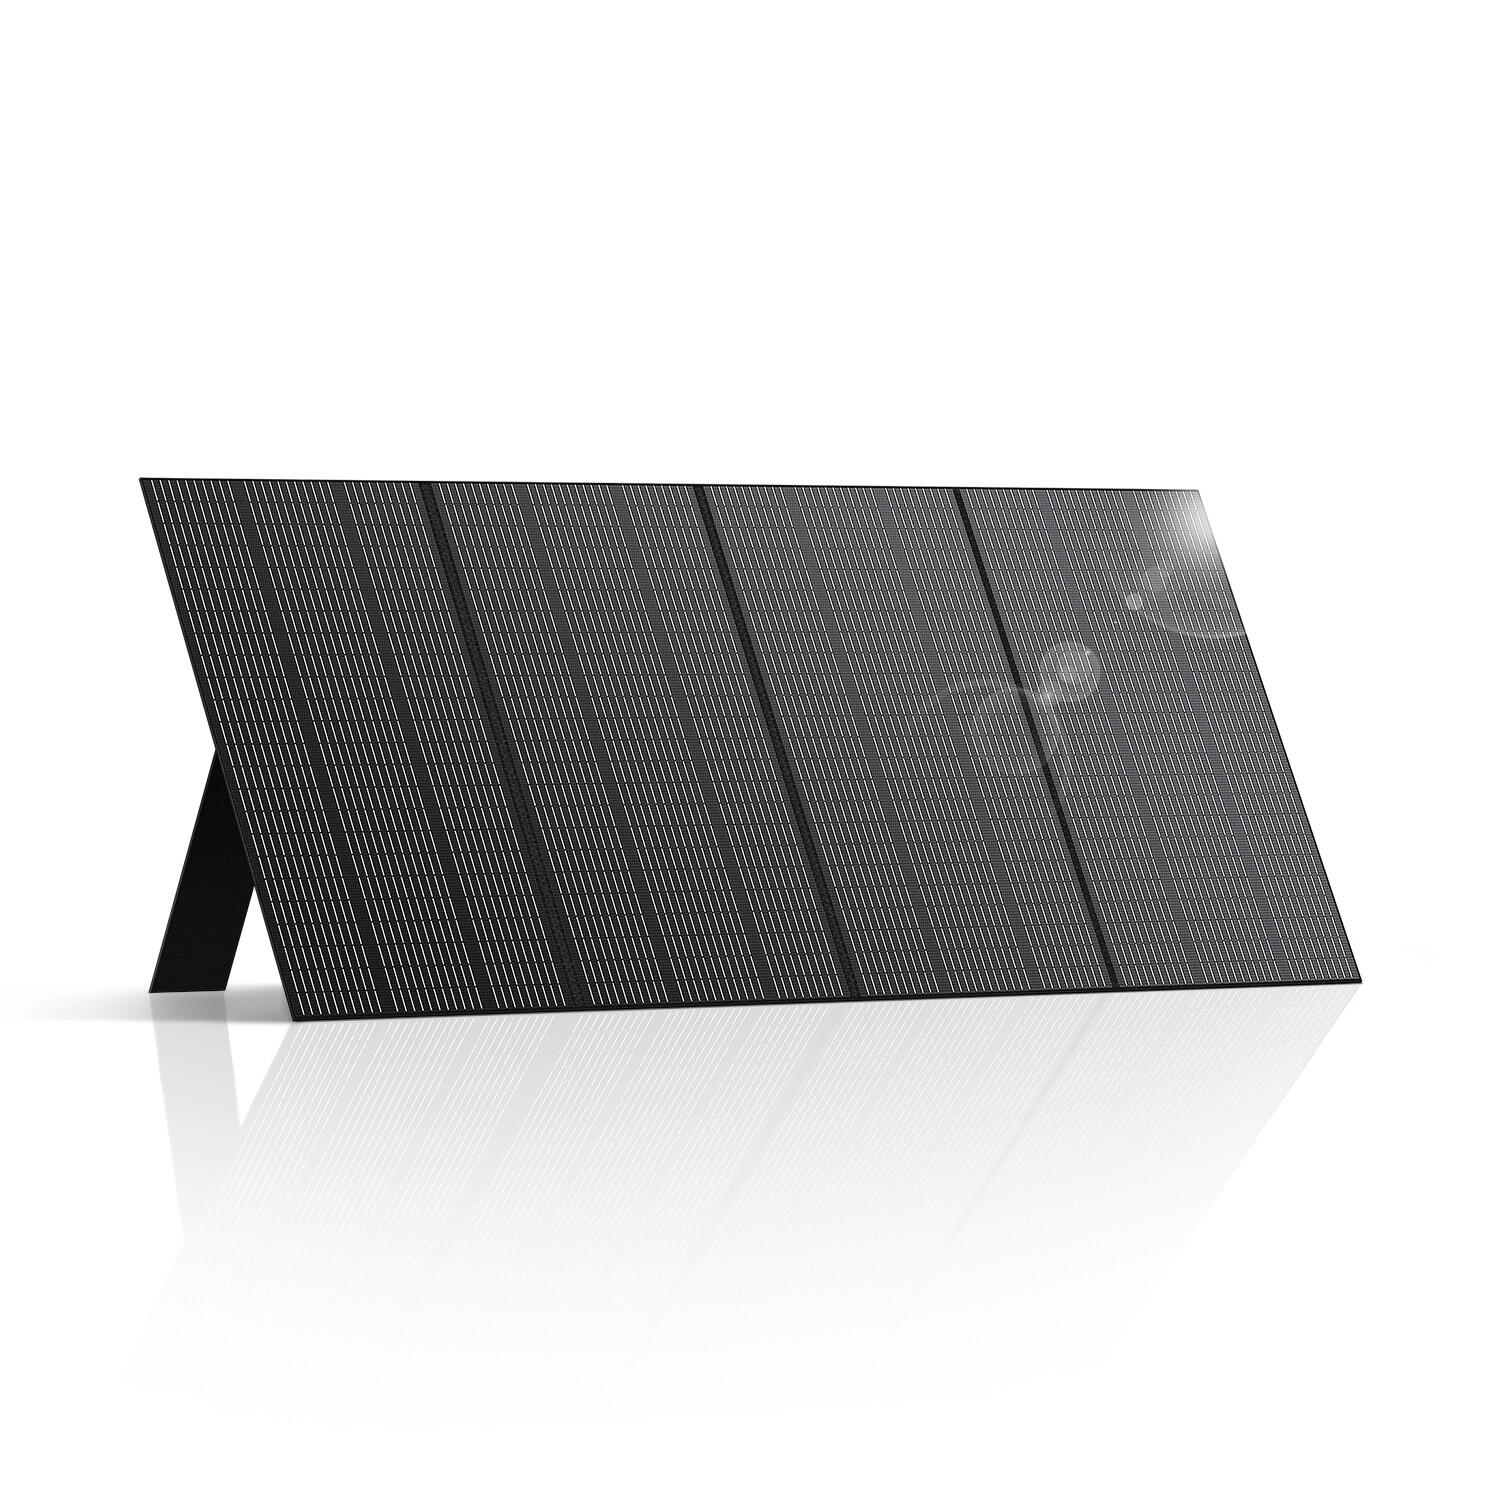 BLUETTI BLUETTI PV350 Solar Panel for RV, Off-Grid Living